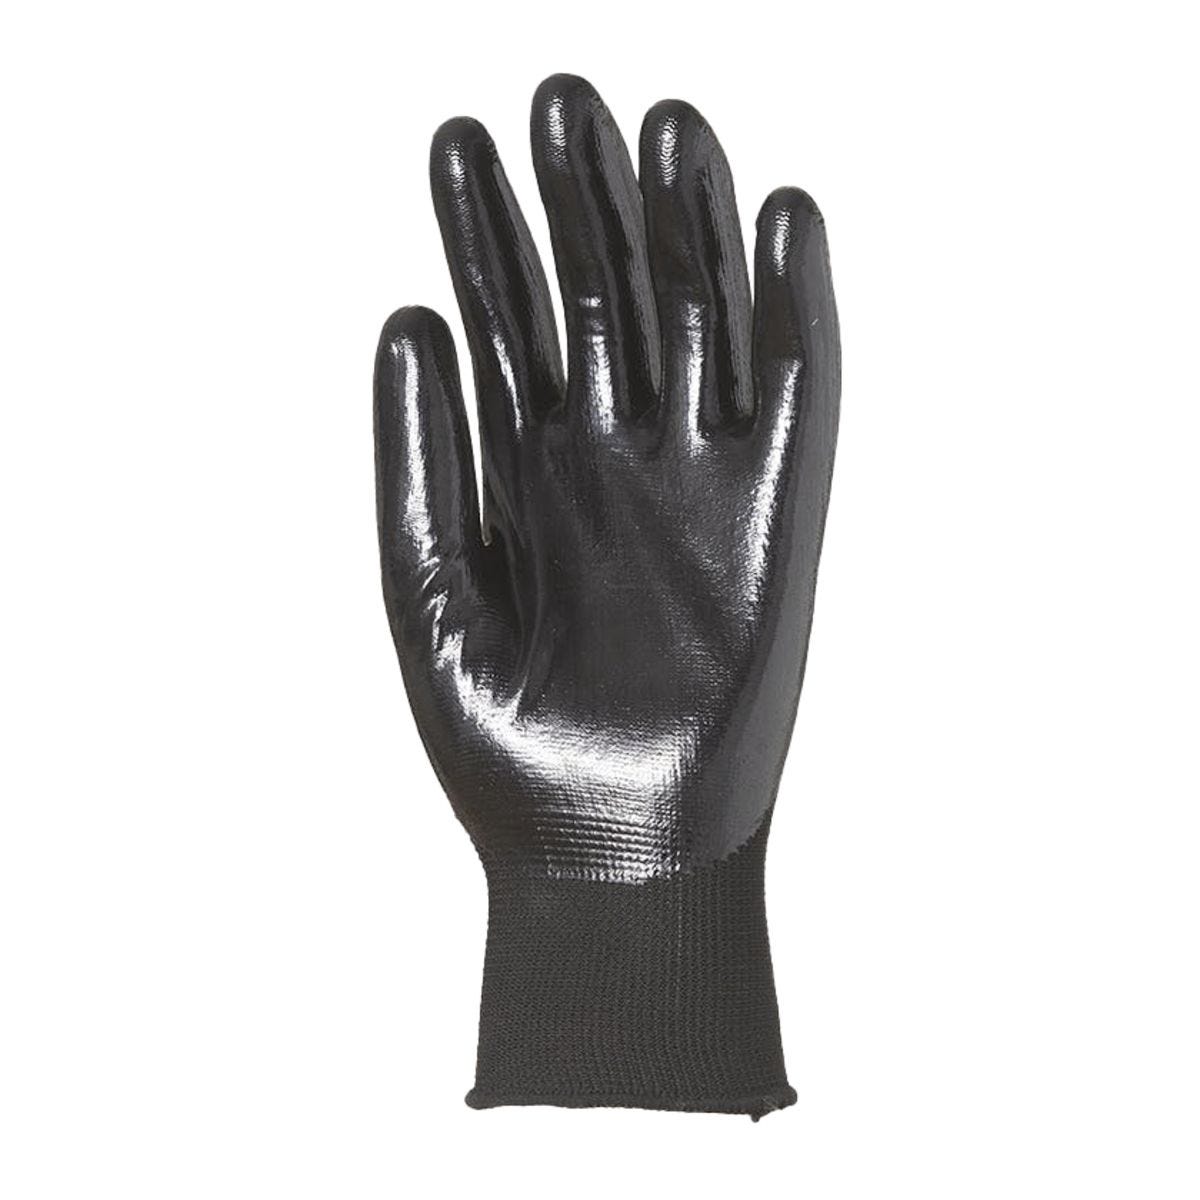 Gants polyester noir jauge 13 enduit 3/4 nitrile noir - Coverguard - Taille M-8 1